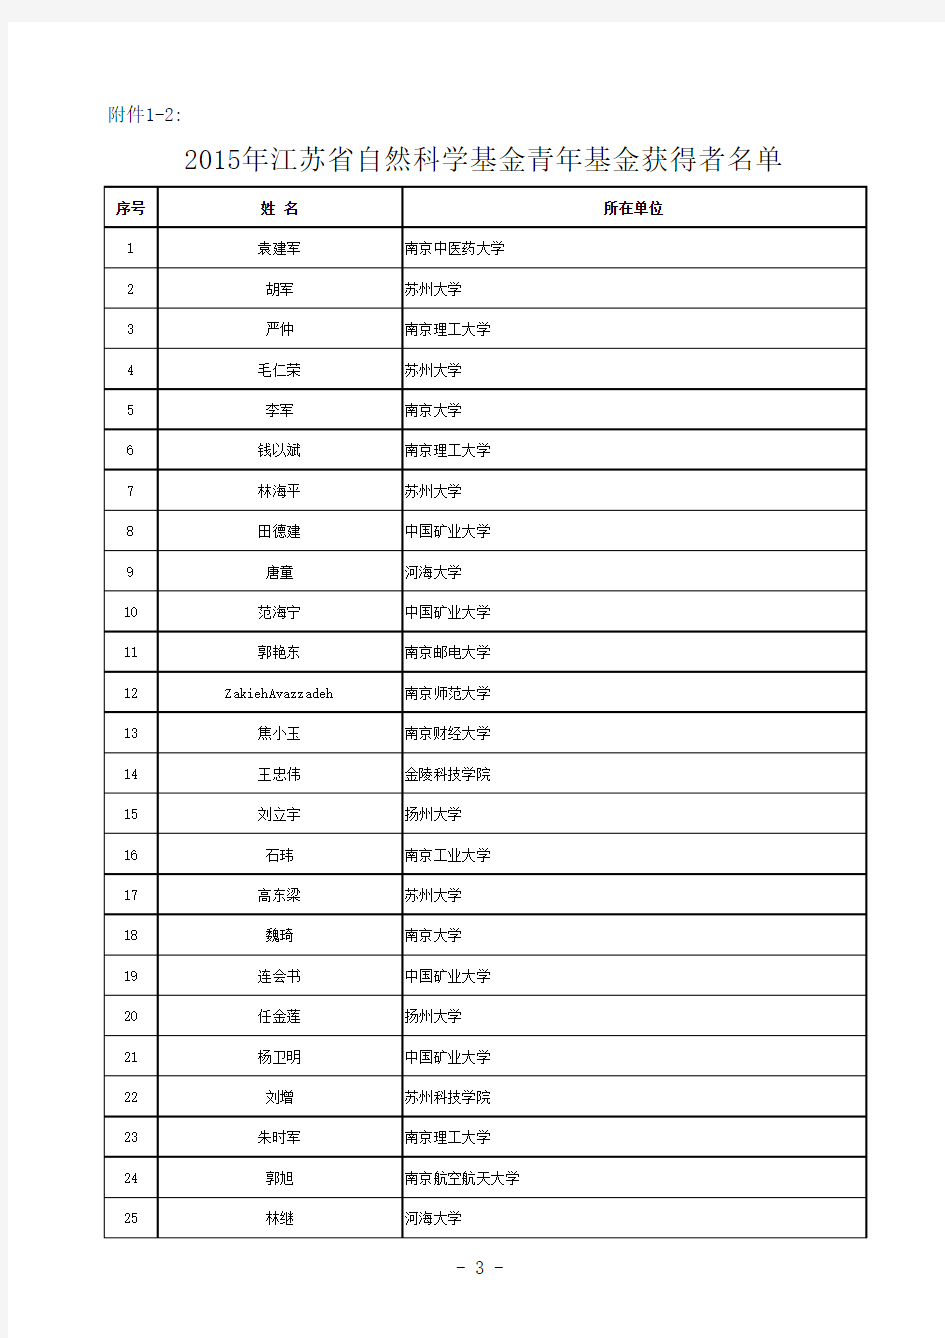 2015江苏省青年基金获得者名单